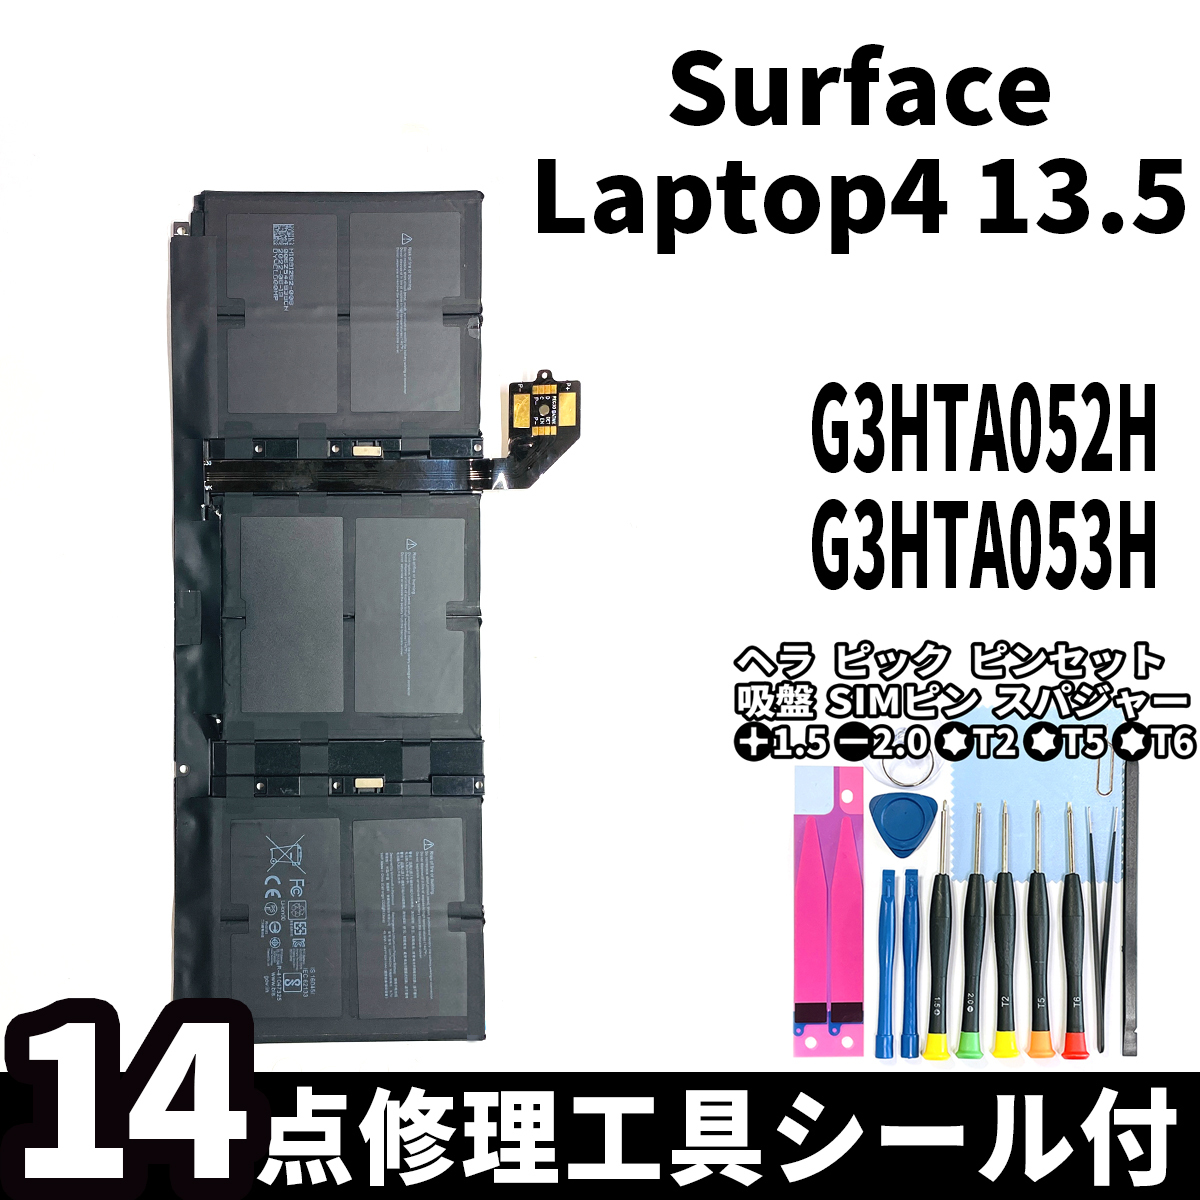 国内即日発送!純正新品!Surface Laptop4 13.5 バッテリー G3HTA052H DYNT02 電池パック交換 本体用内蔵battery 両面テープ 修理工具付